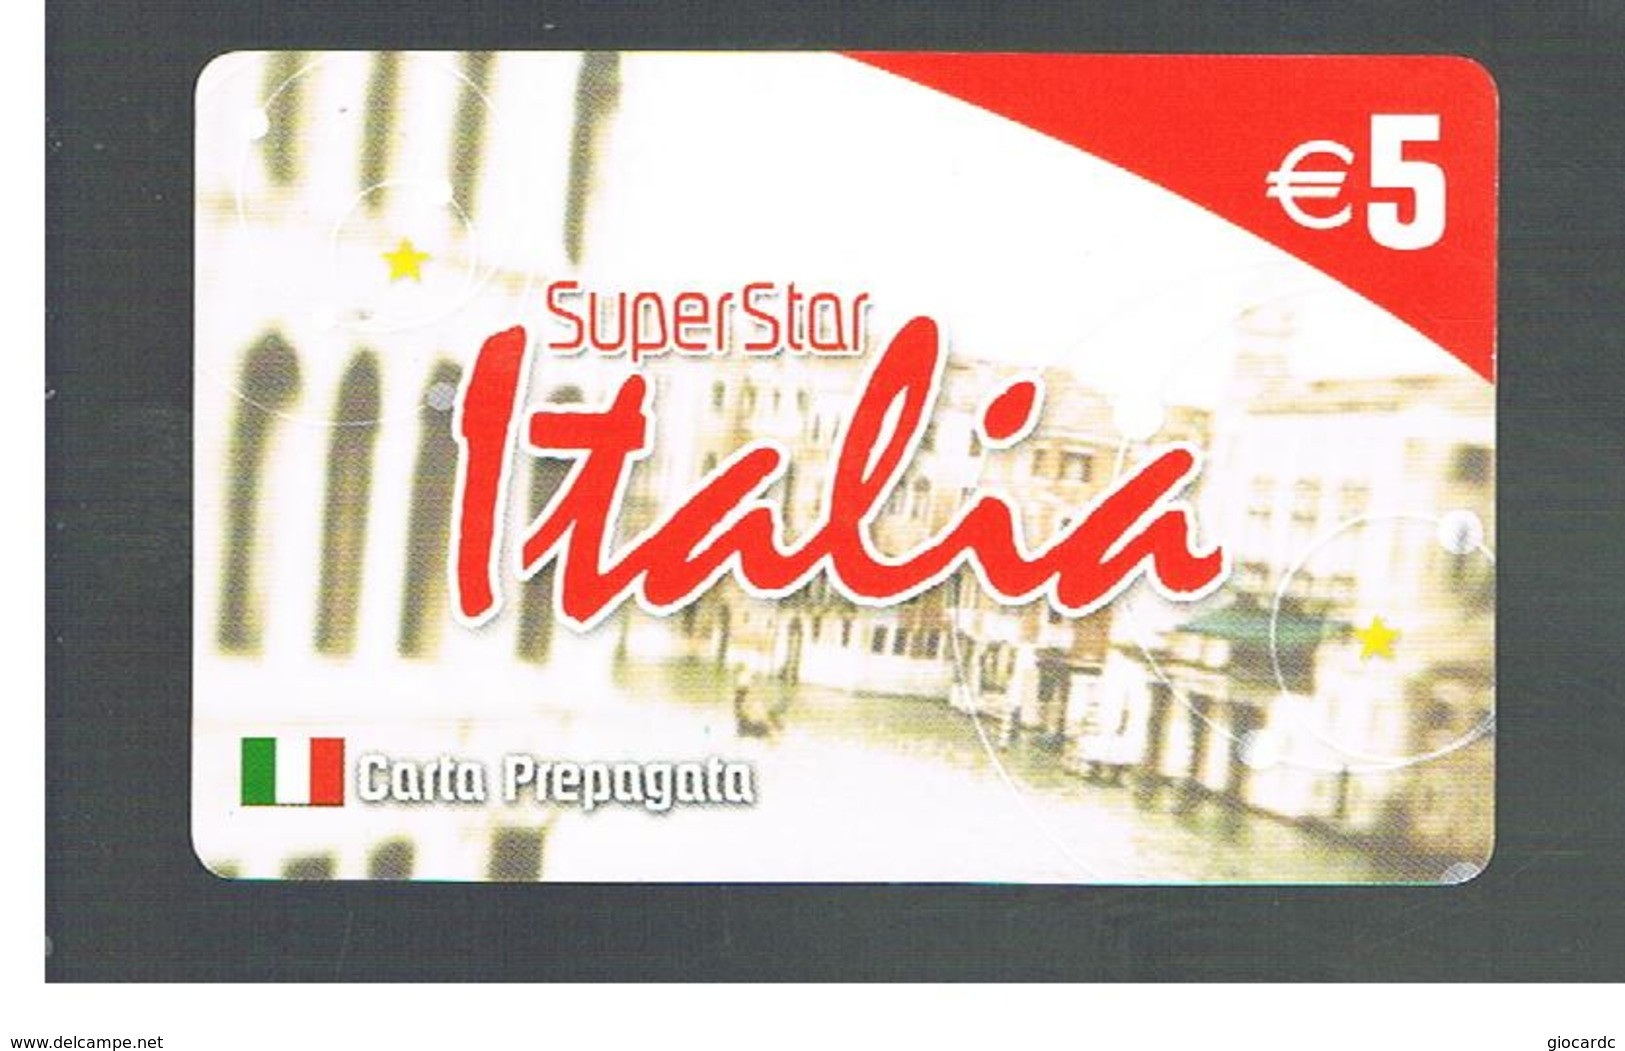 ITALIA (ITALY) - REMOTE -  T STAR - SUPERSTAR, BUILDING       - USED - RIF. 10971 - Schede GSM, Prepagate & Ricariche